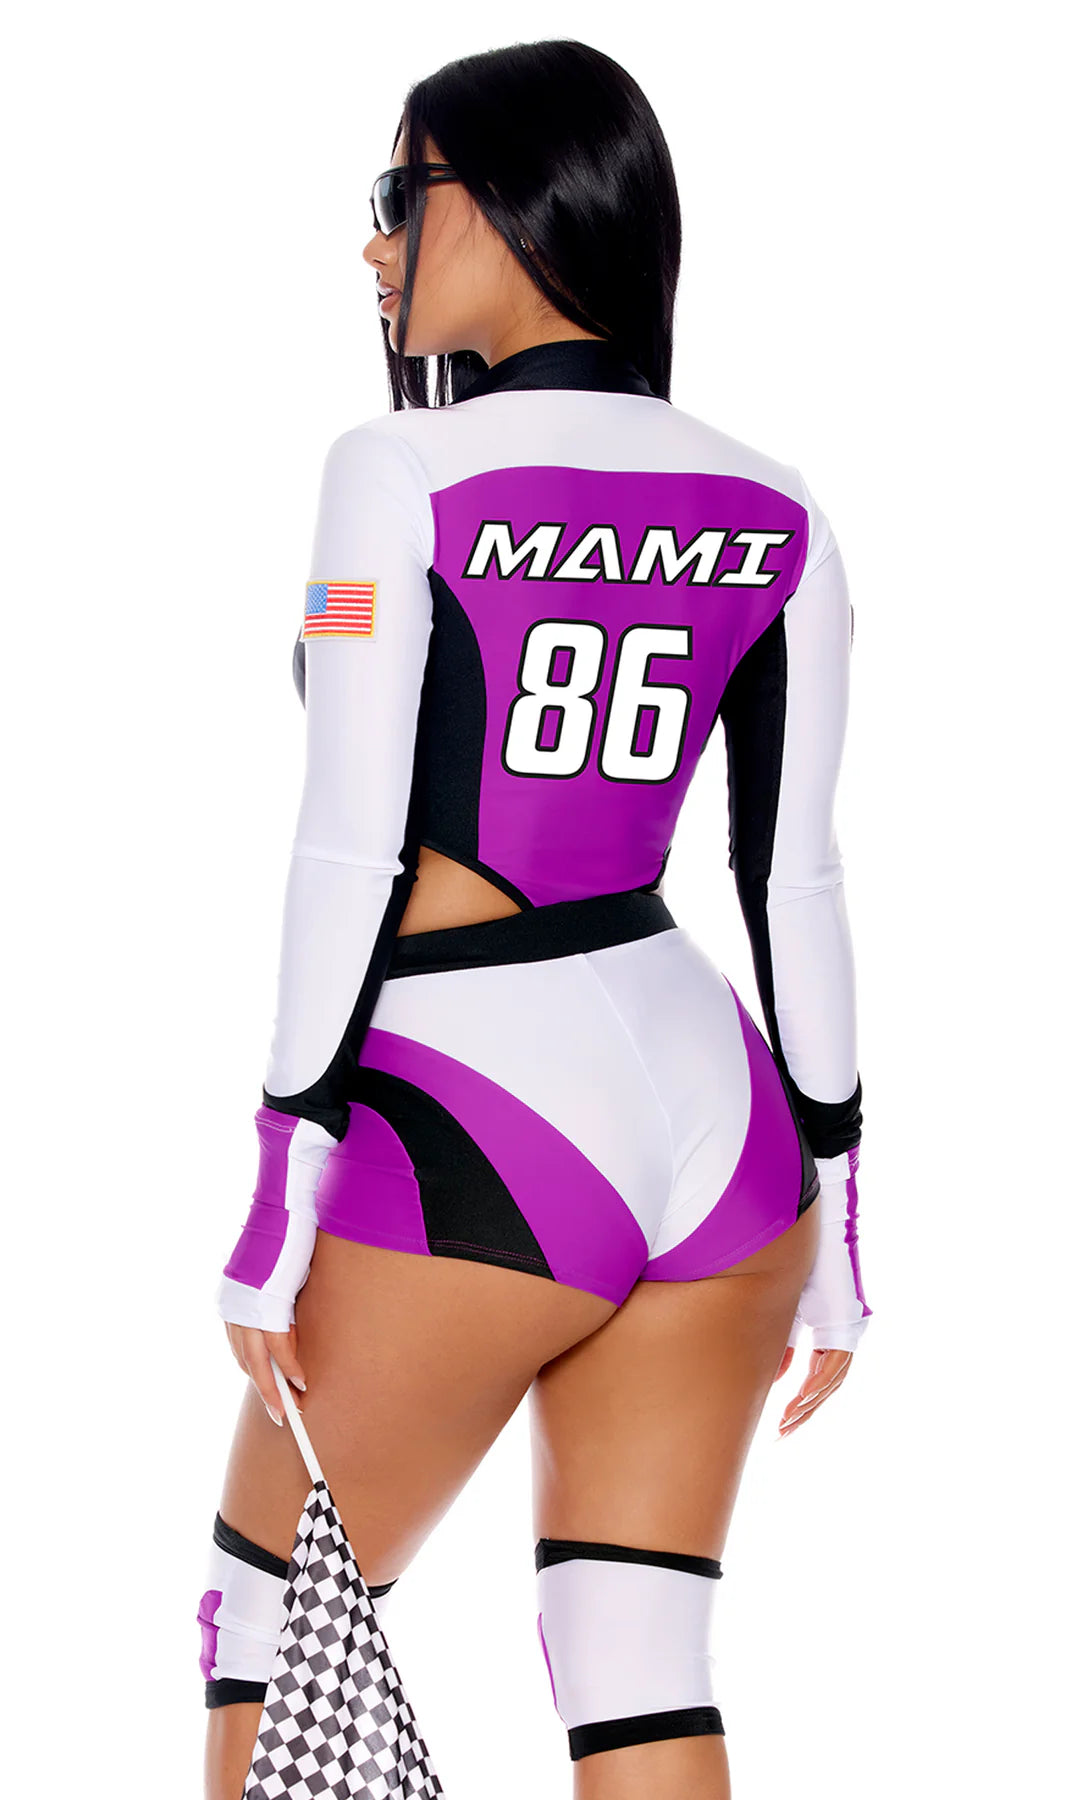 Moto Mami Racer Costume